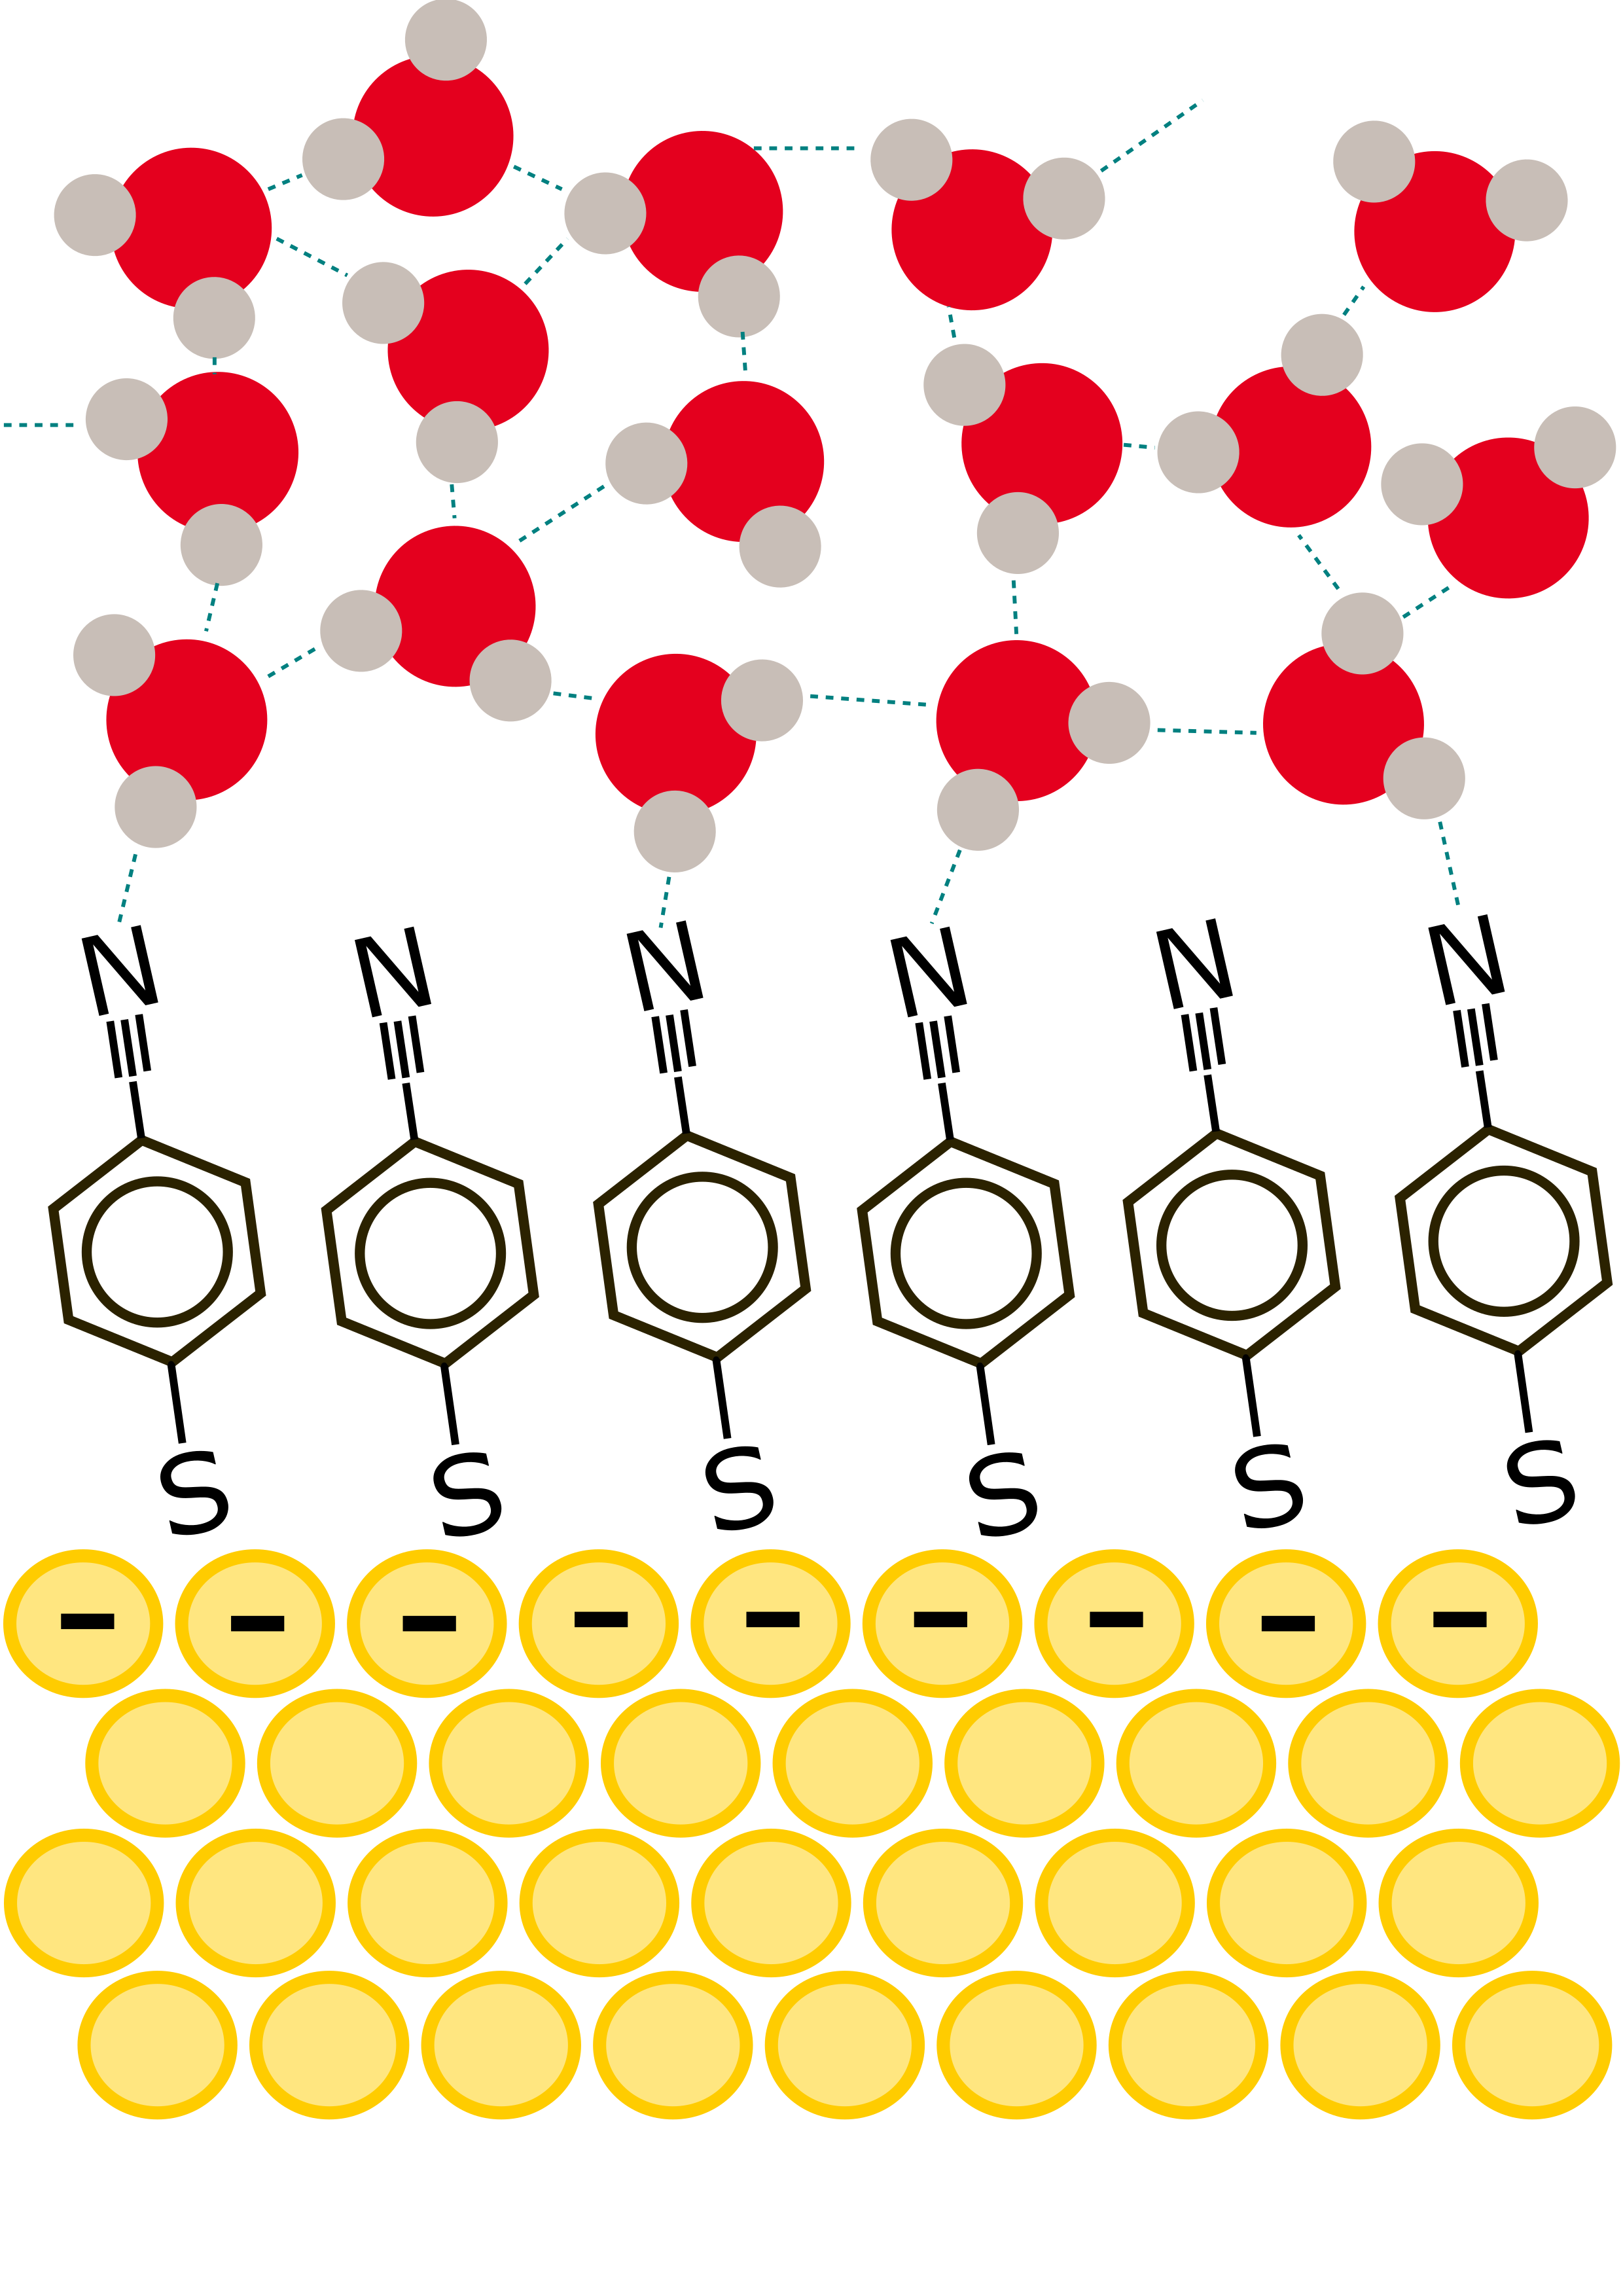 [그림 1] 금(Au) 표면의 흡착 분자와 주변의 물 분자들을 나타낸 그림.